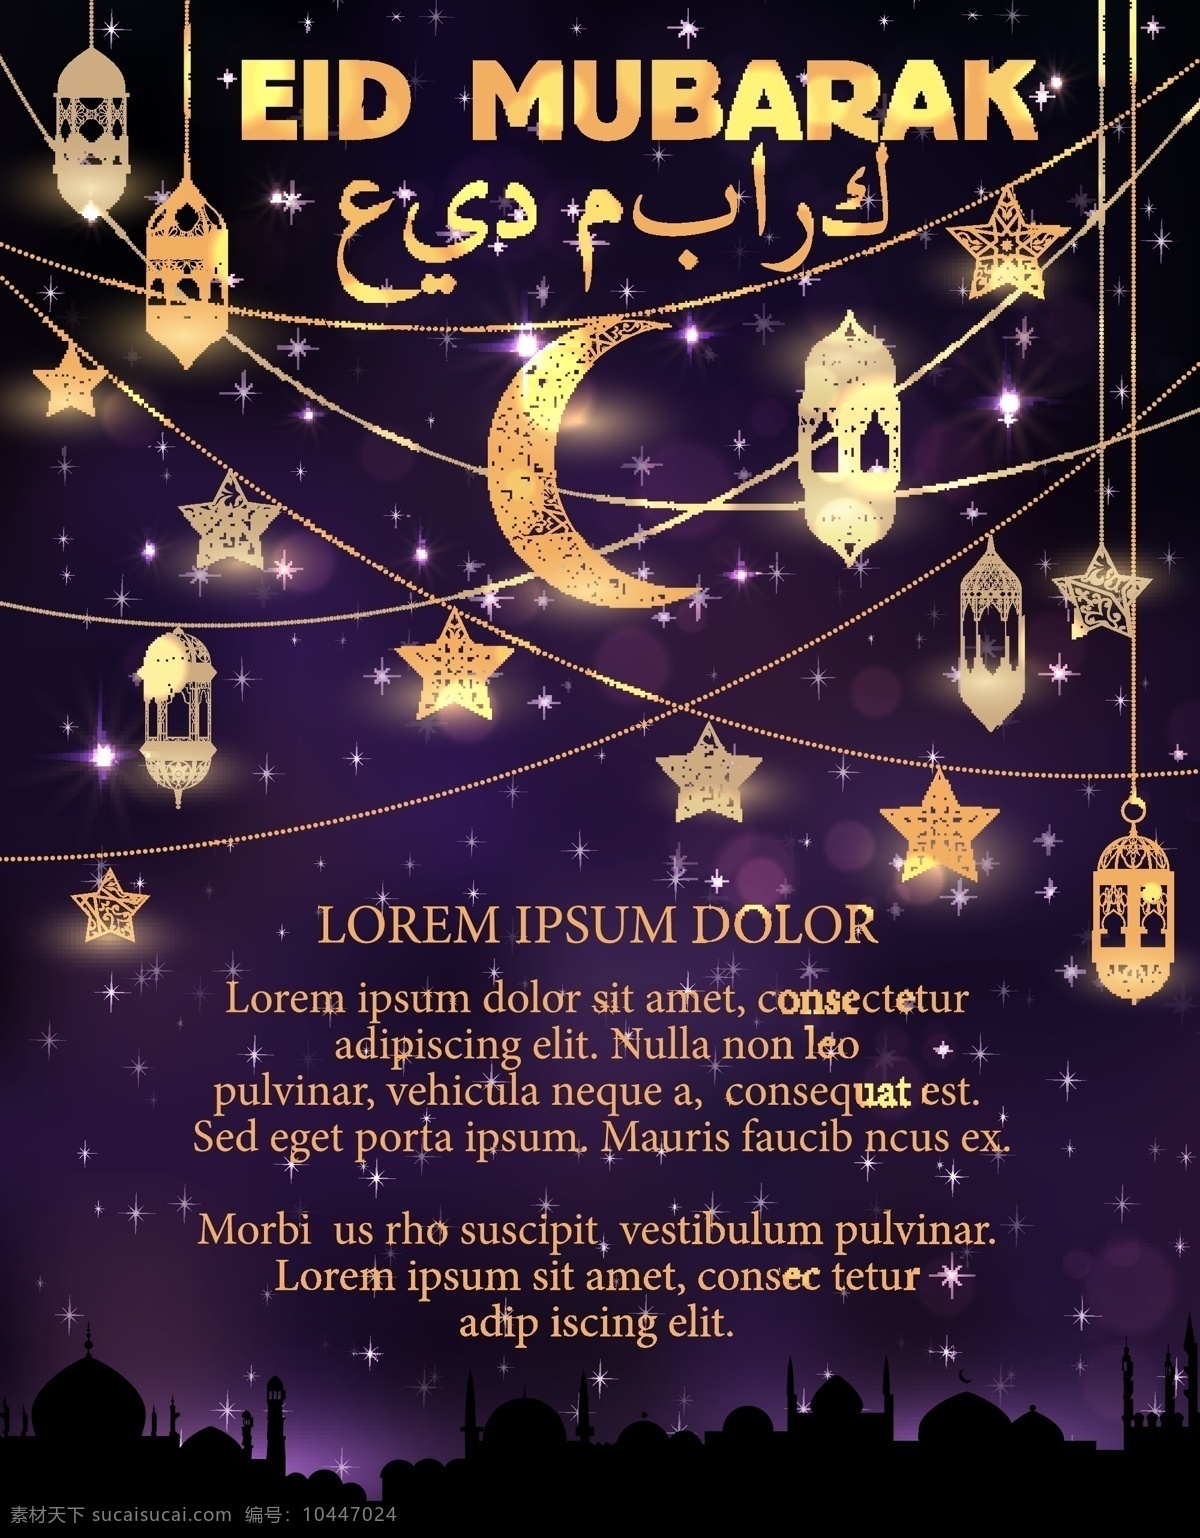 斋月节 斋月 阿拉伯建筑 建筑设计 斋月灯饰 月亮 阿拉伯书法 阿拉伯文字 伊斯兰 斋月吉祥 文化艺术 宗教信仰